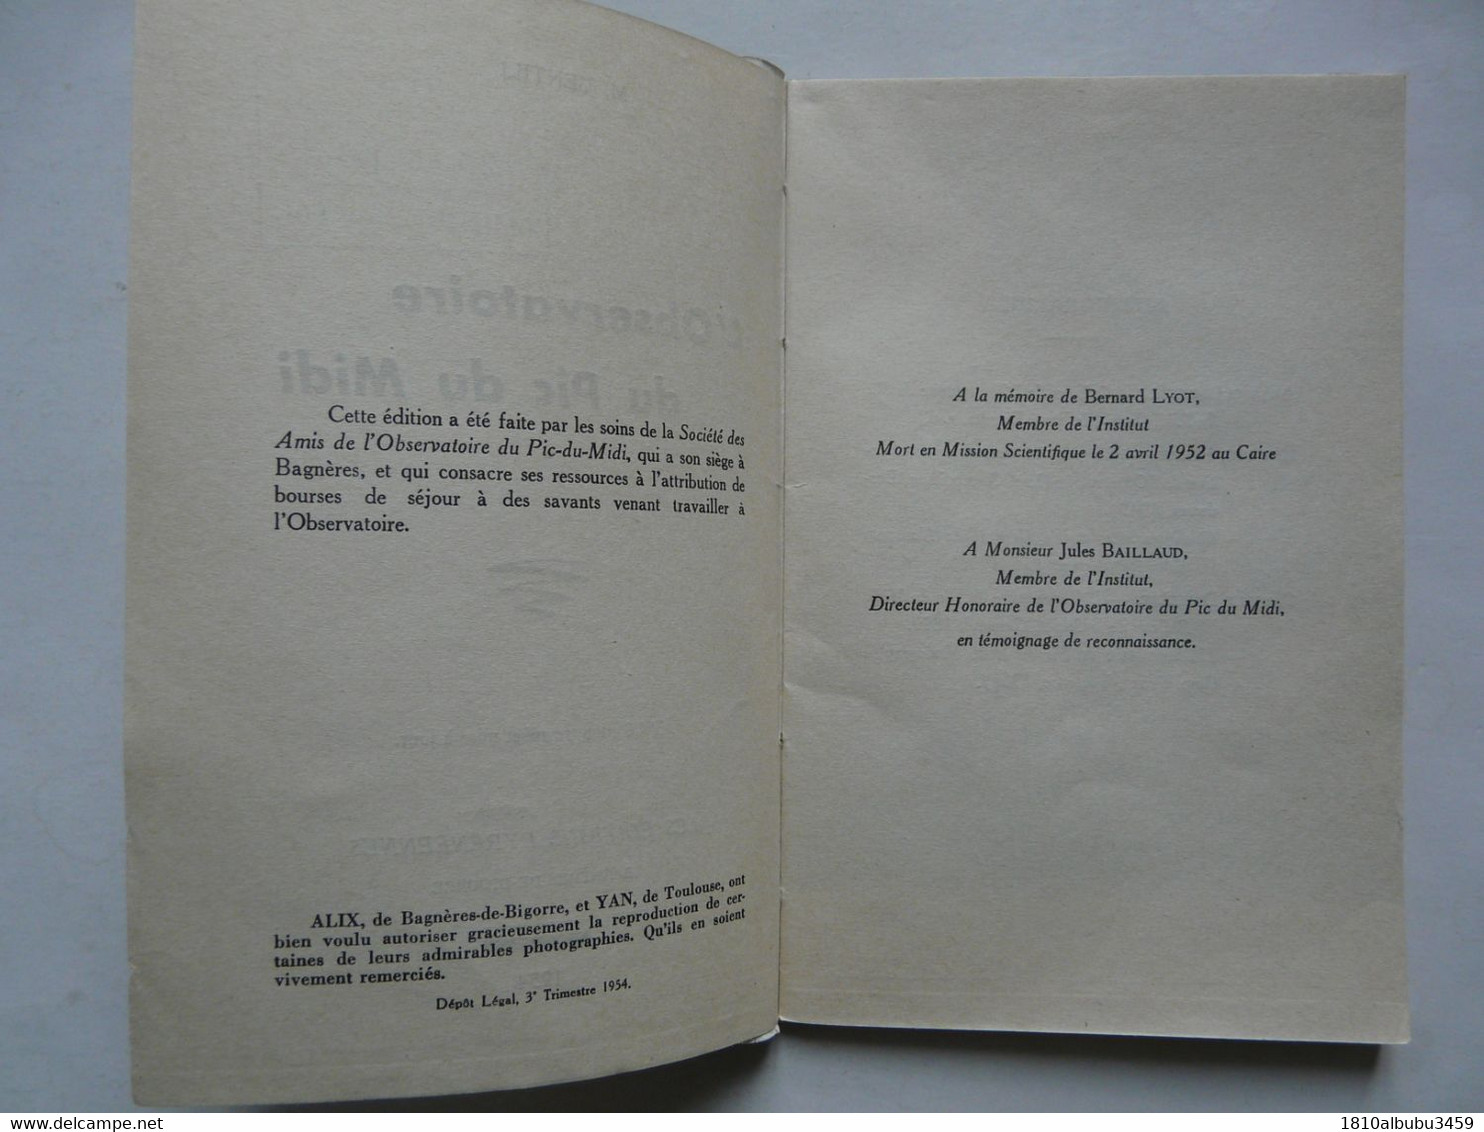 L'OBSERVATOIRE DU PIC DU MIDI (48 pages) - LES EDITIONS PYRENEENNES 1954